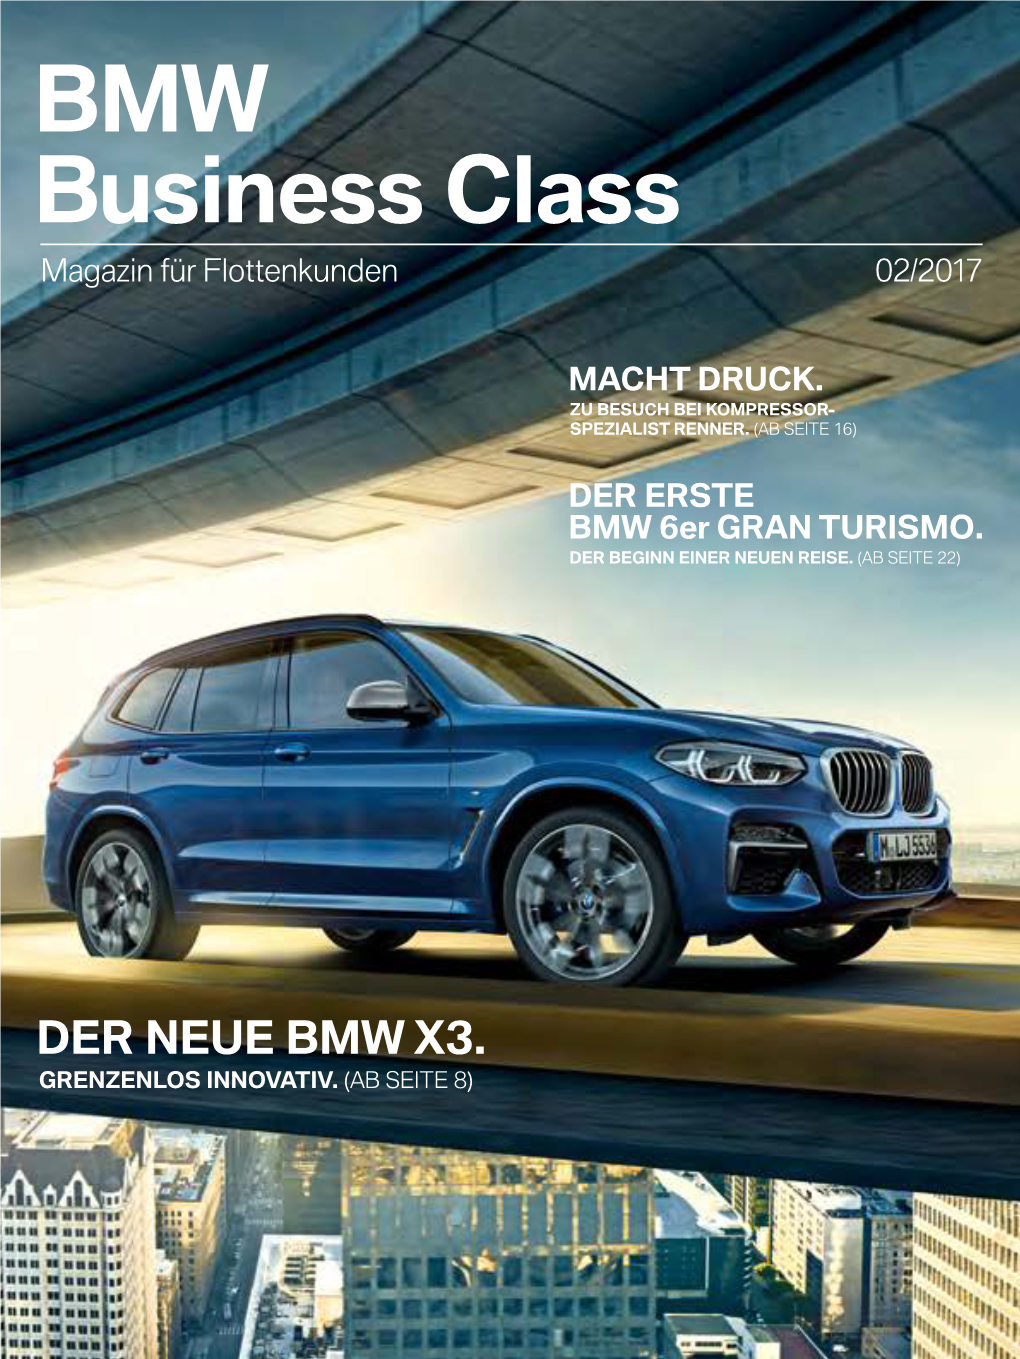 BMW Business Class Magazin Für Flottenkunden 02/2017